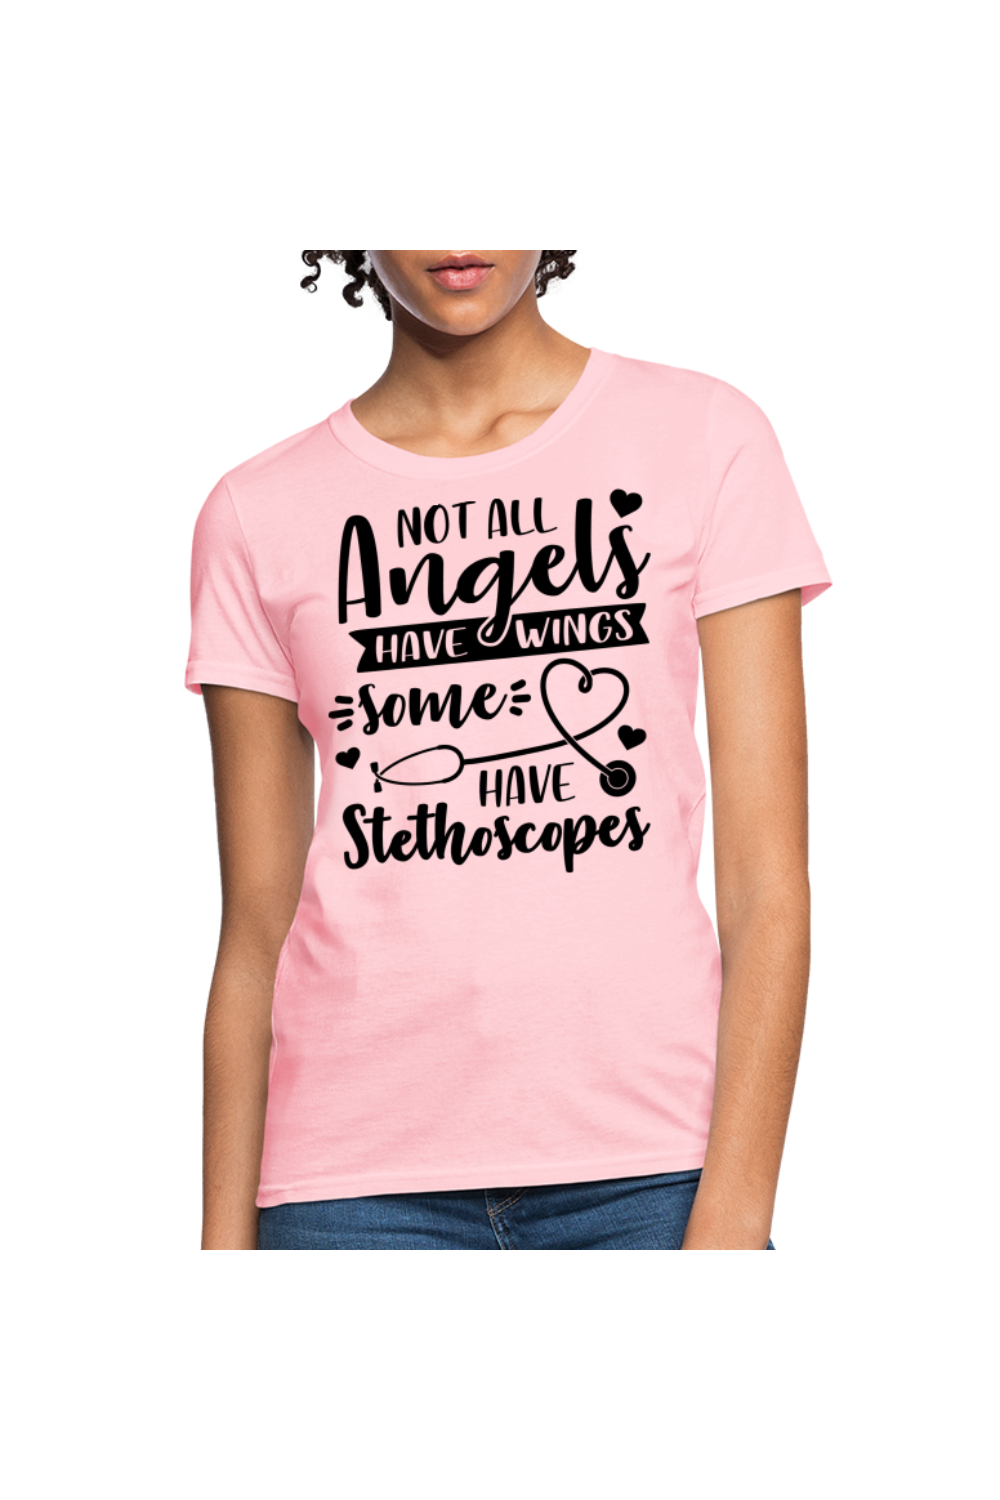 Not All Angels Women's Nurse T-Shirt - pink